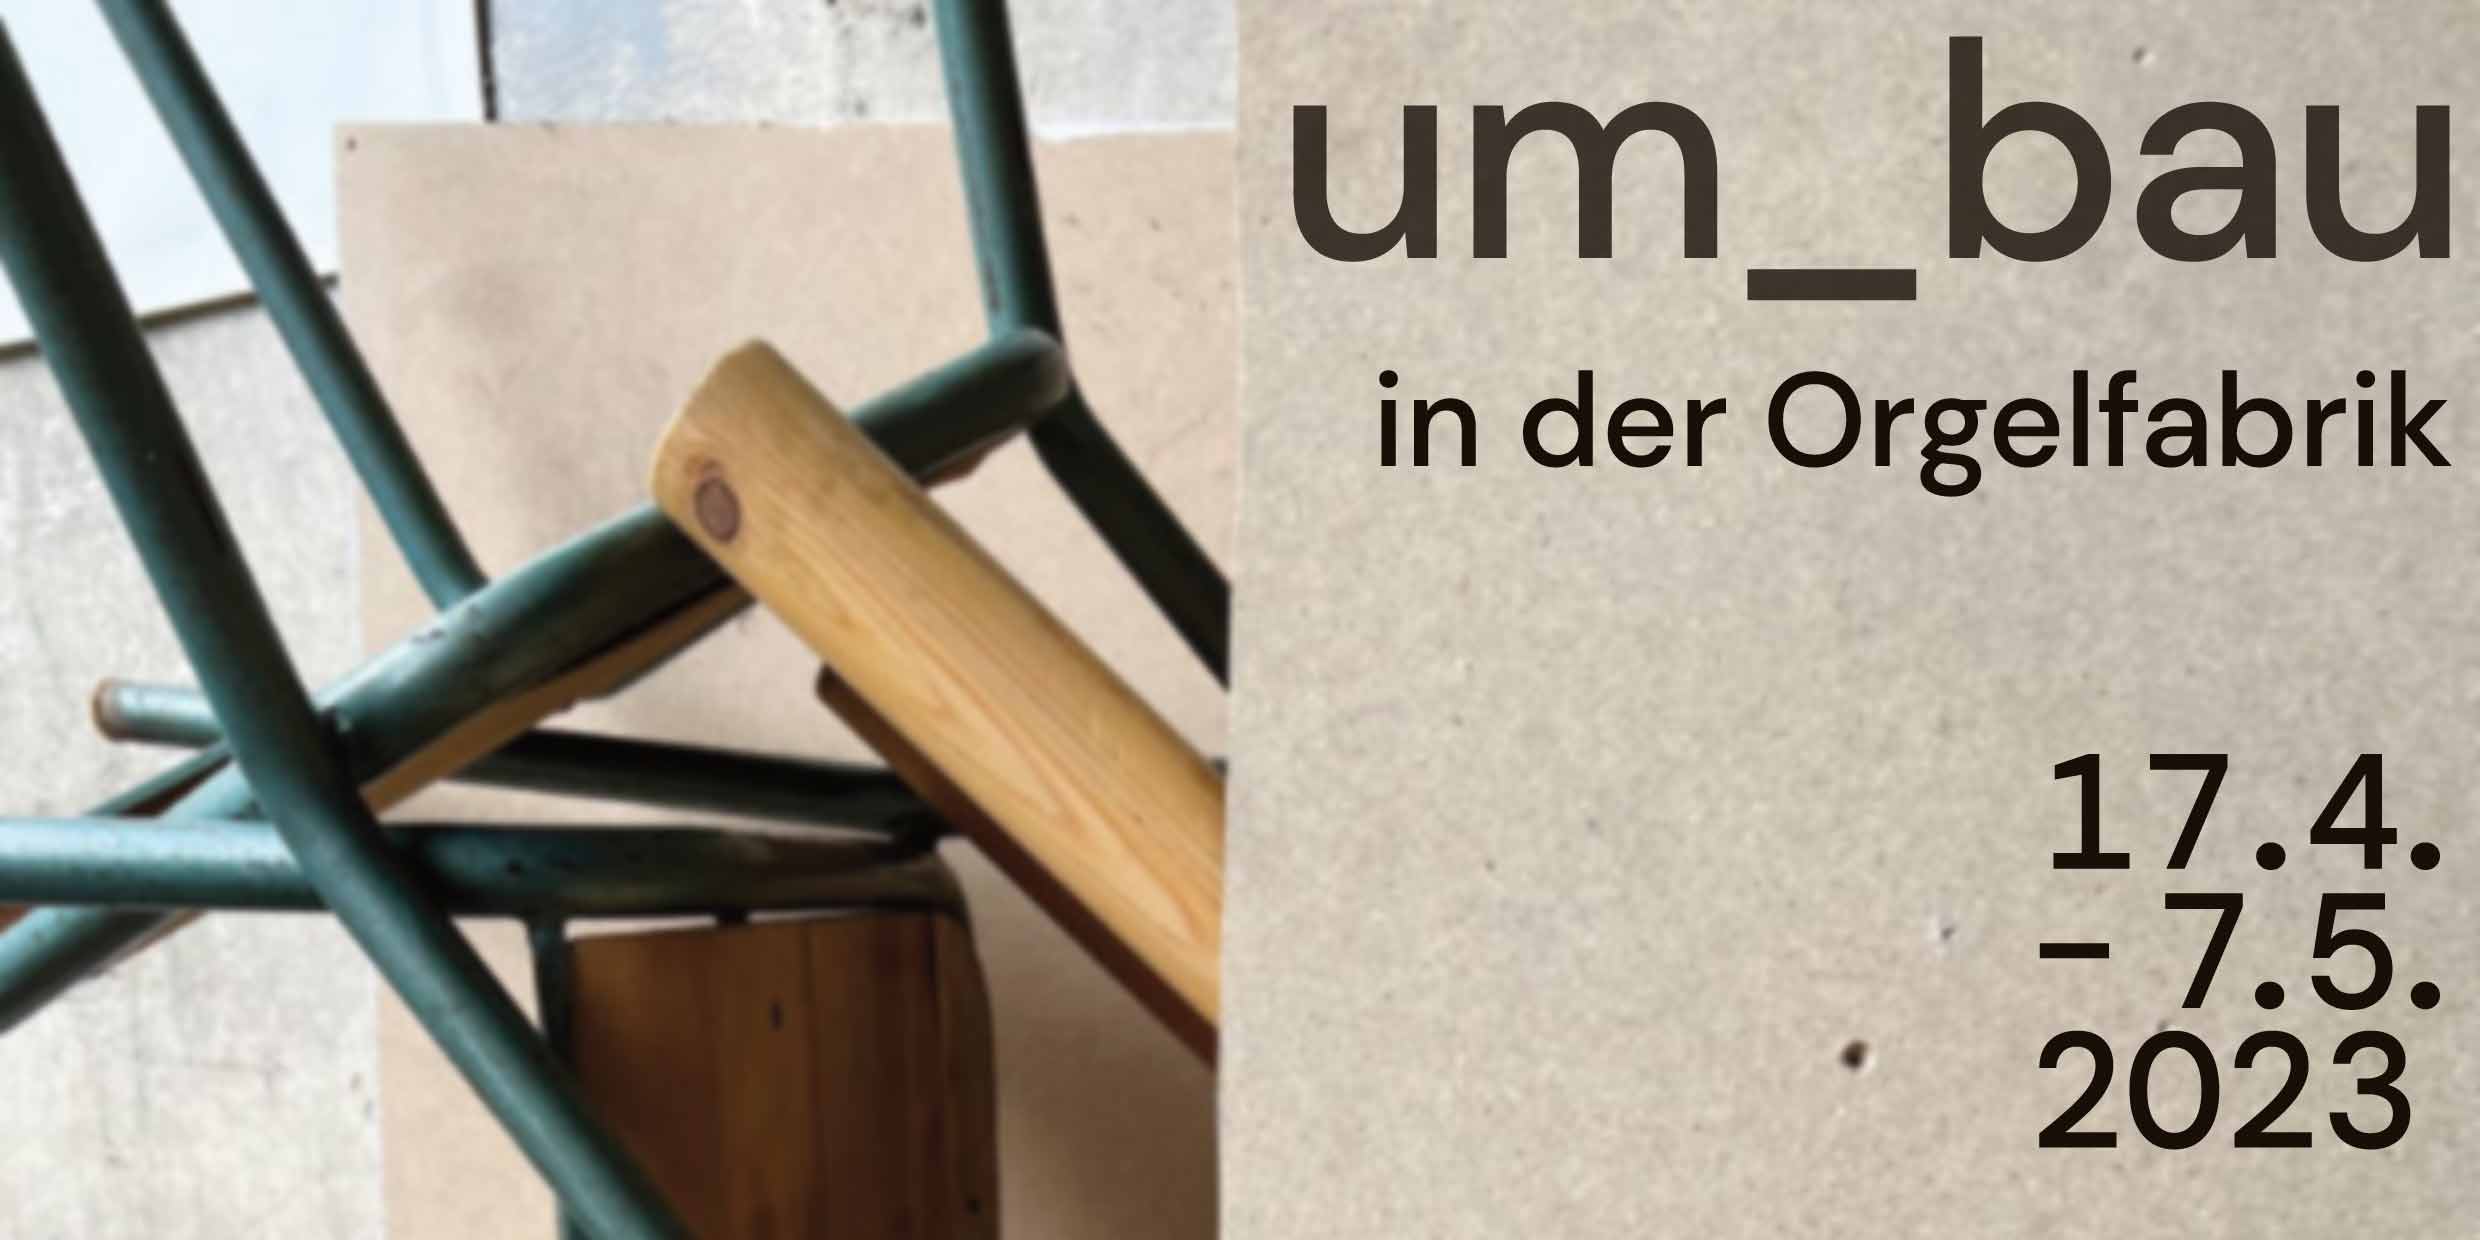 Ausstellungsprojekt um_bau, Orgelfabrik Karlsruhe-Durlach, 17.04. – 07.05.2023